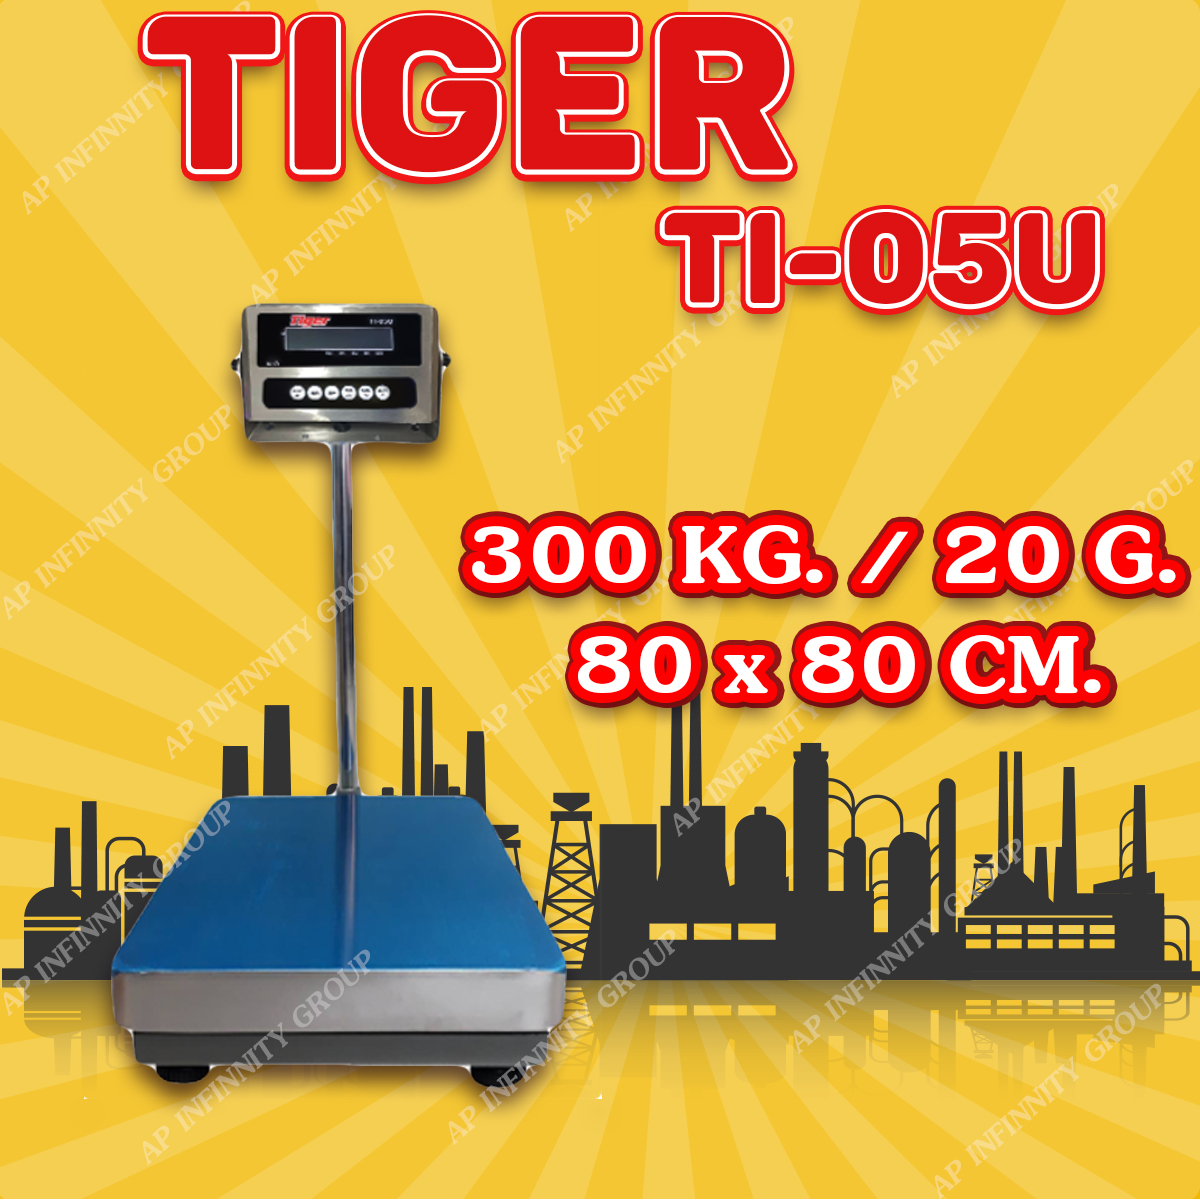 ตาชั่งดิจิตอล เครื่องชั่งดิจิตอล เครื่องชั่งตั้งพื้น 300kg ความละเอียด 20g ยี่ห้อ Tiger รุ่น TI–05U แท่นชั่งขนาดฐาน 80x80cm มีช่อง USB สำหรับการบันทึกข้อมูลได้ รูปที่ 1